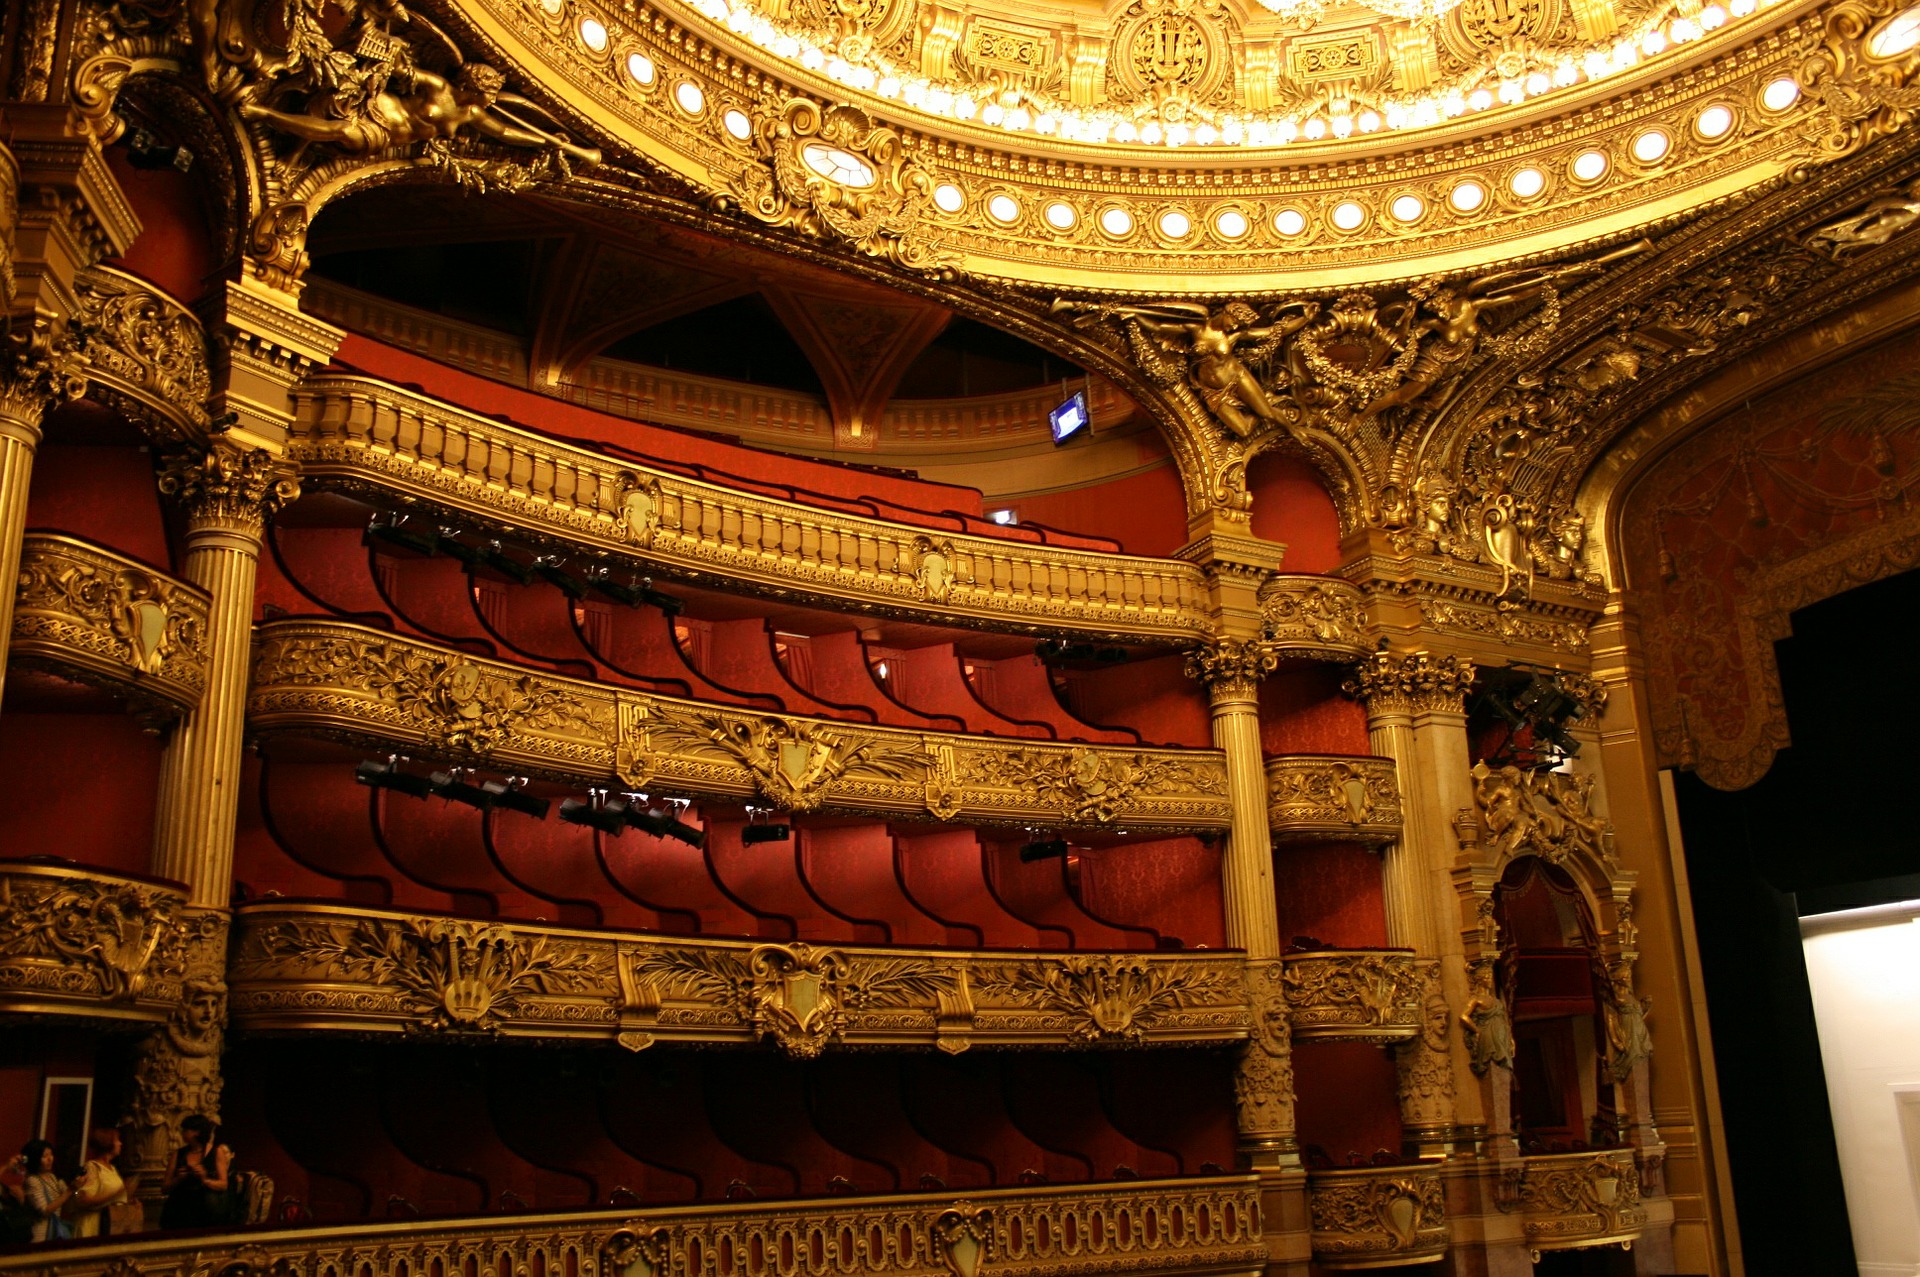 Auditorium inside the Palais Garnier Opera House